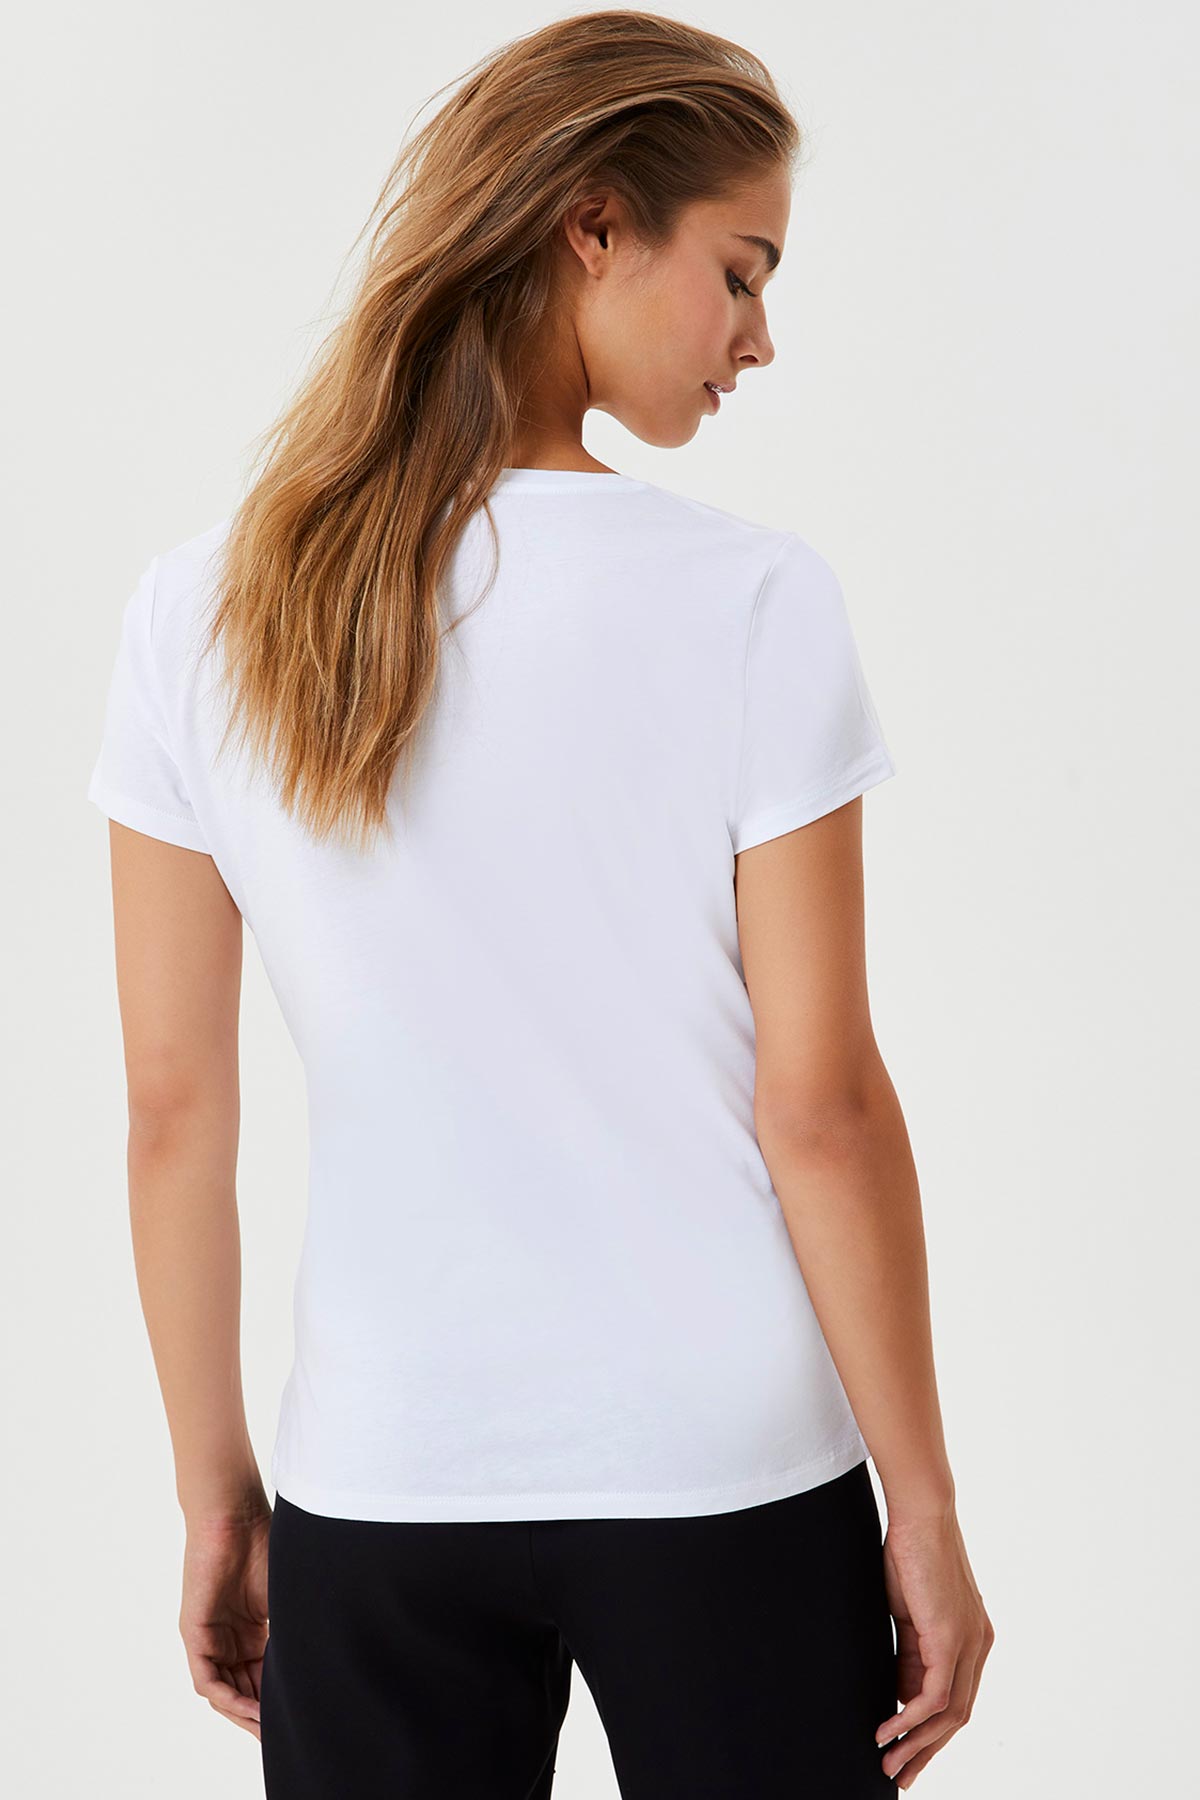 Liu Jo T-shirt-Libas Trendy Fashion Store